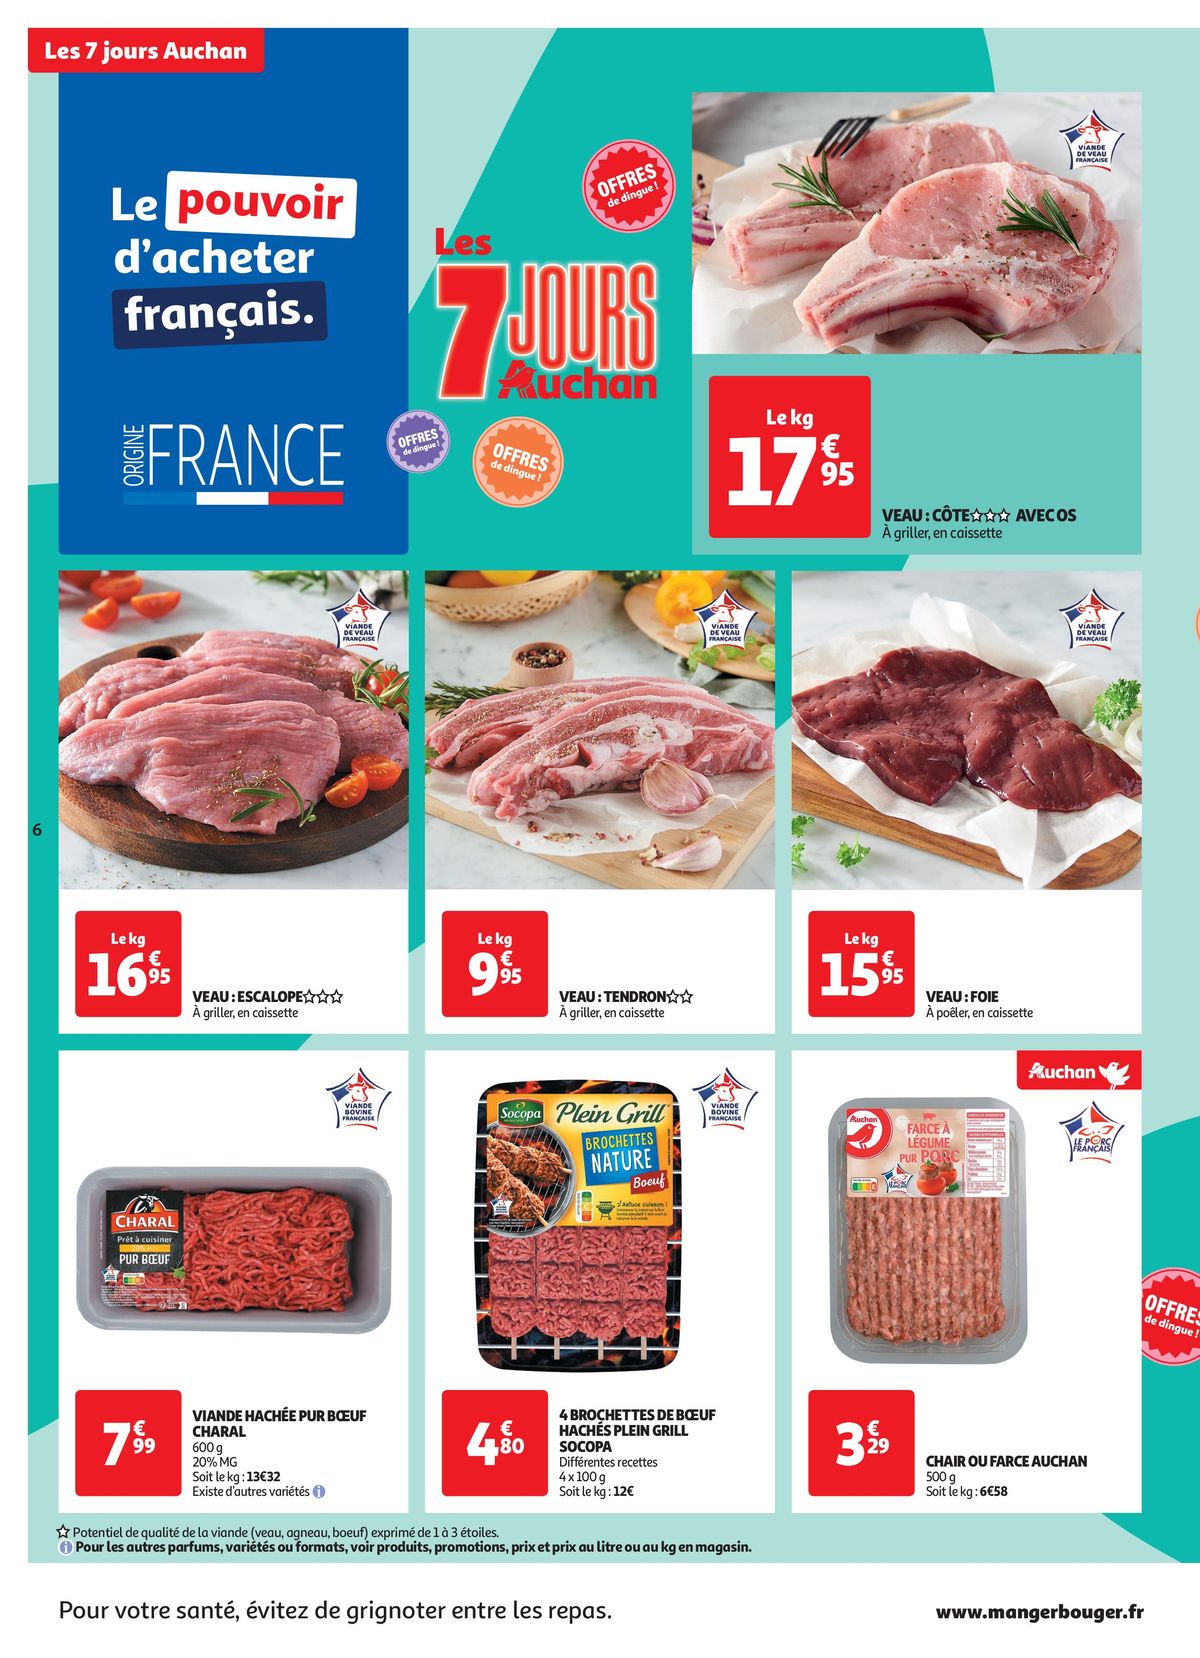 Catalogue C'est les 7 jours Auchan dans votre super !, page 00006